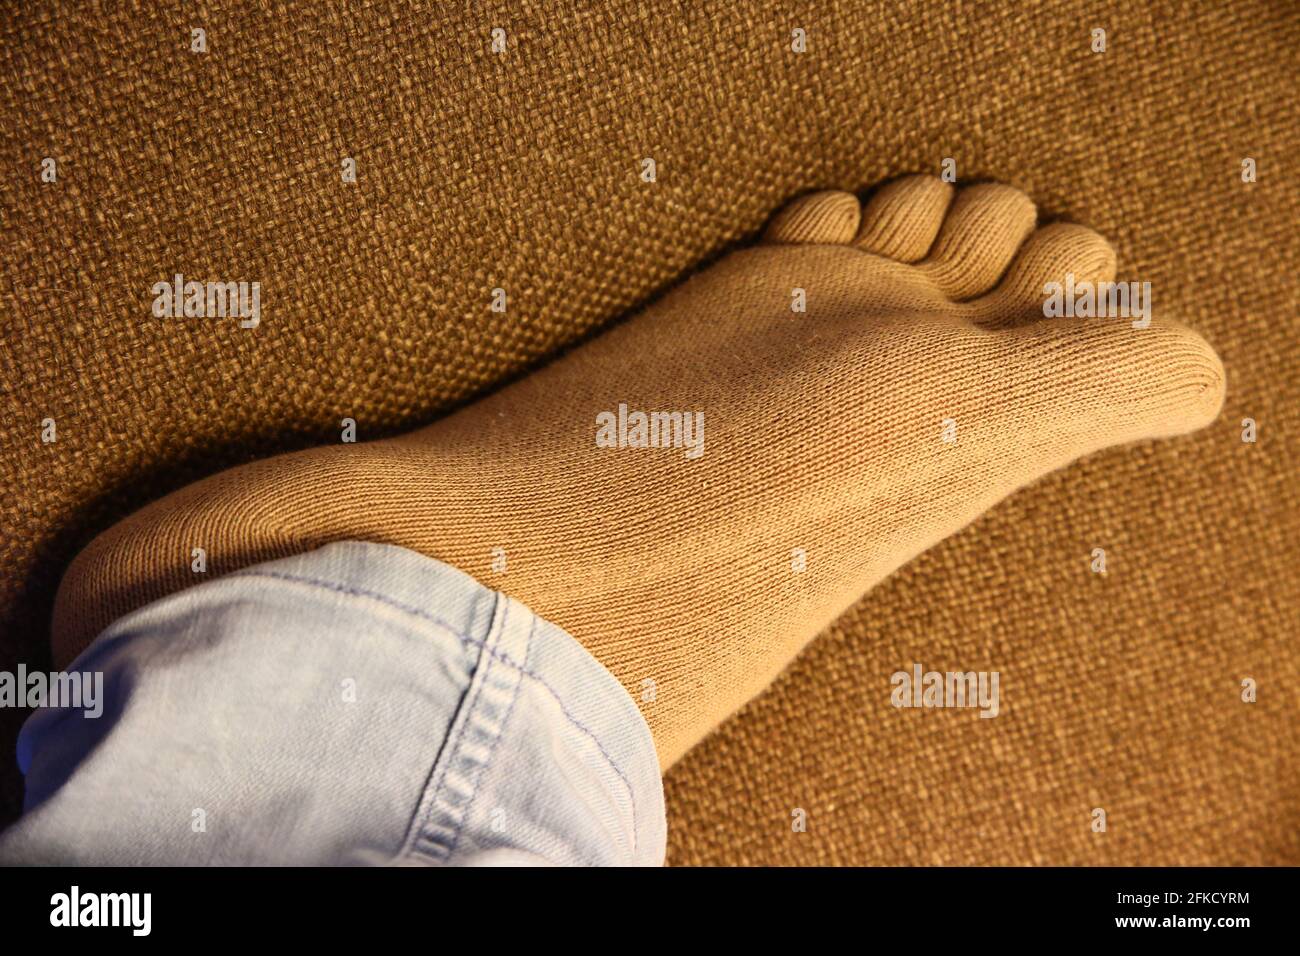 Calcetines sanos con el dedo que llevan el pie sobre el sofá en la imagen de cerca que muestra la suela. Foto de stock